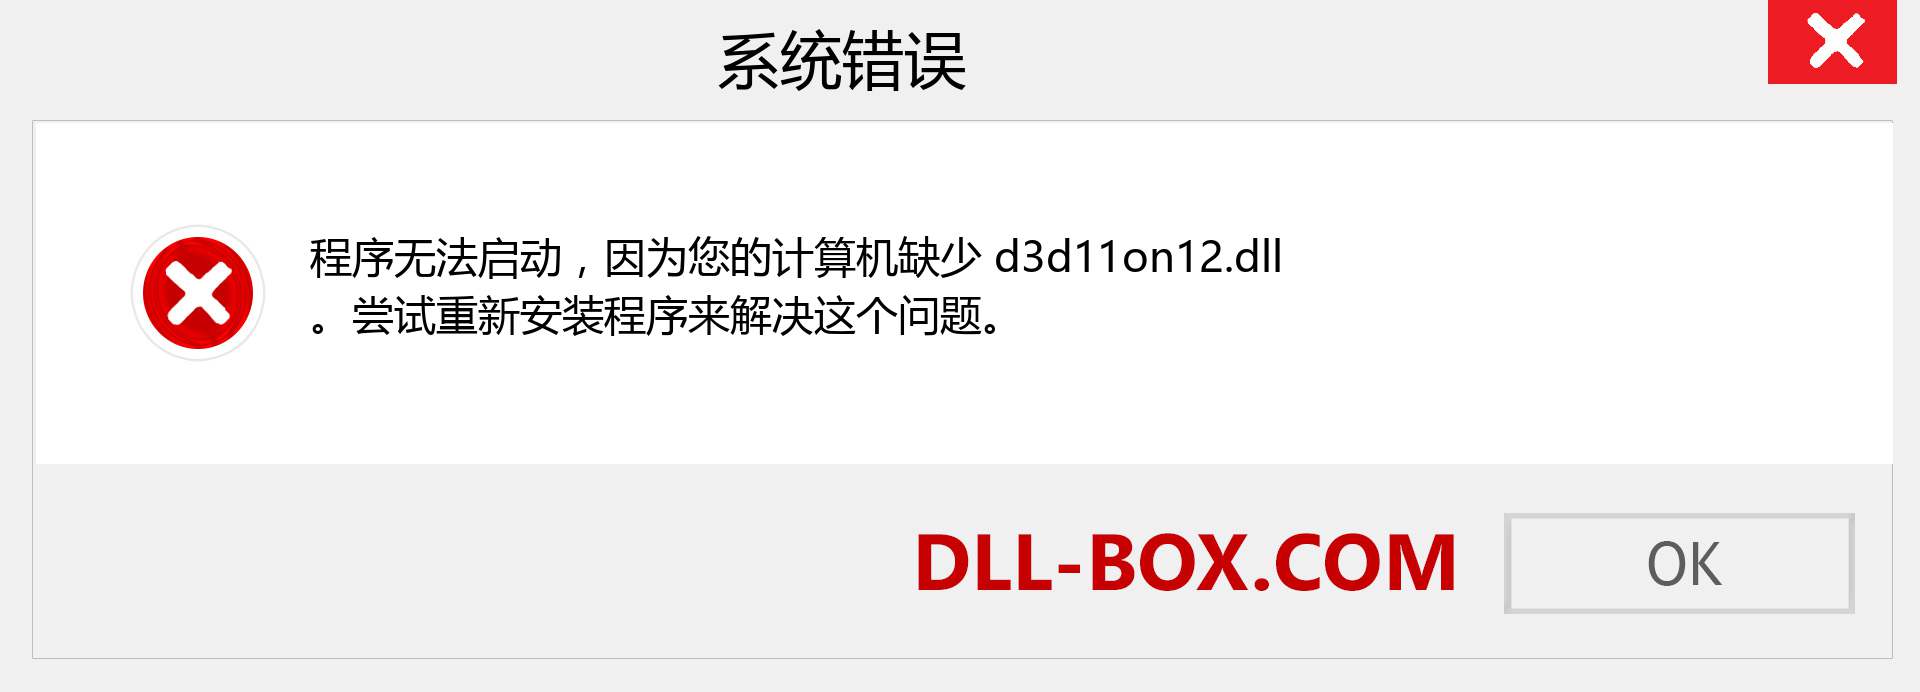 d3d11on12.dll 文件丢失？。 适用于 Windows 7、8、10 的下载 - 修复 Windows、照片、图像上的 d3d11on12 dll 丢失错误